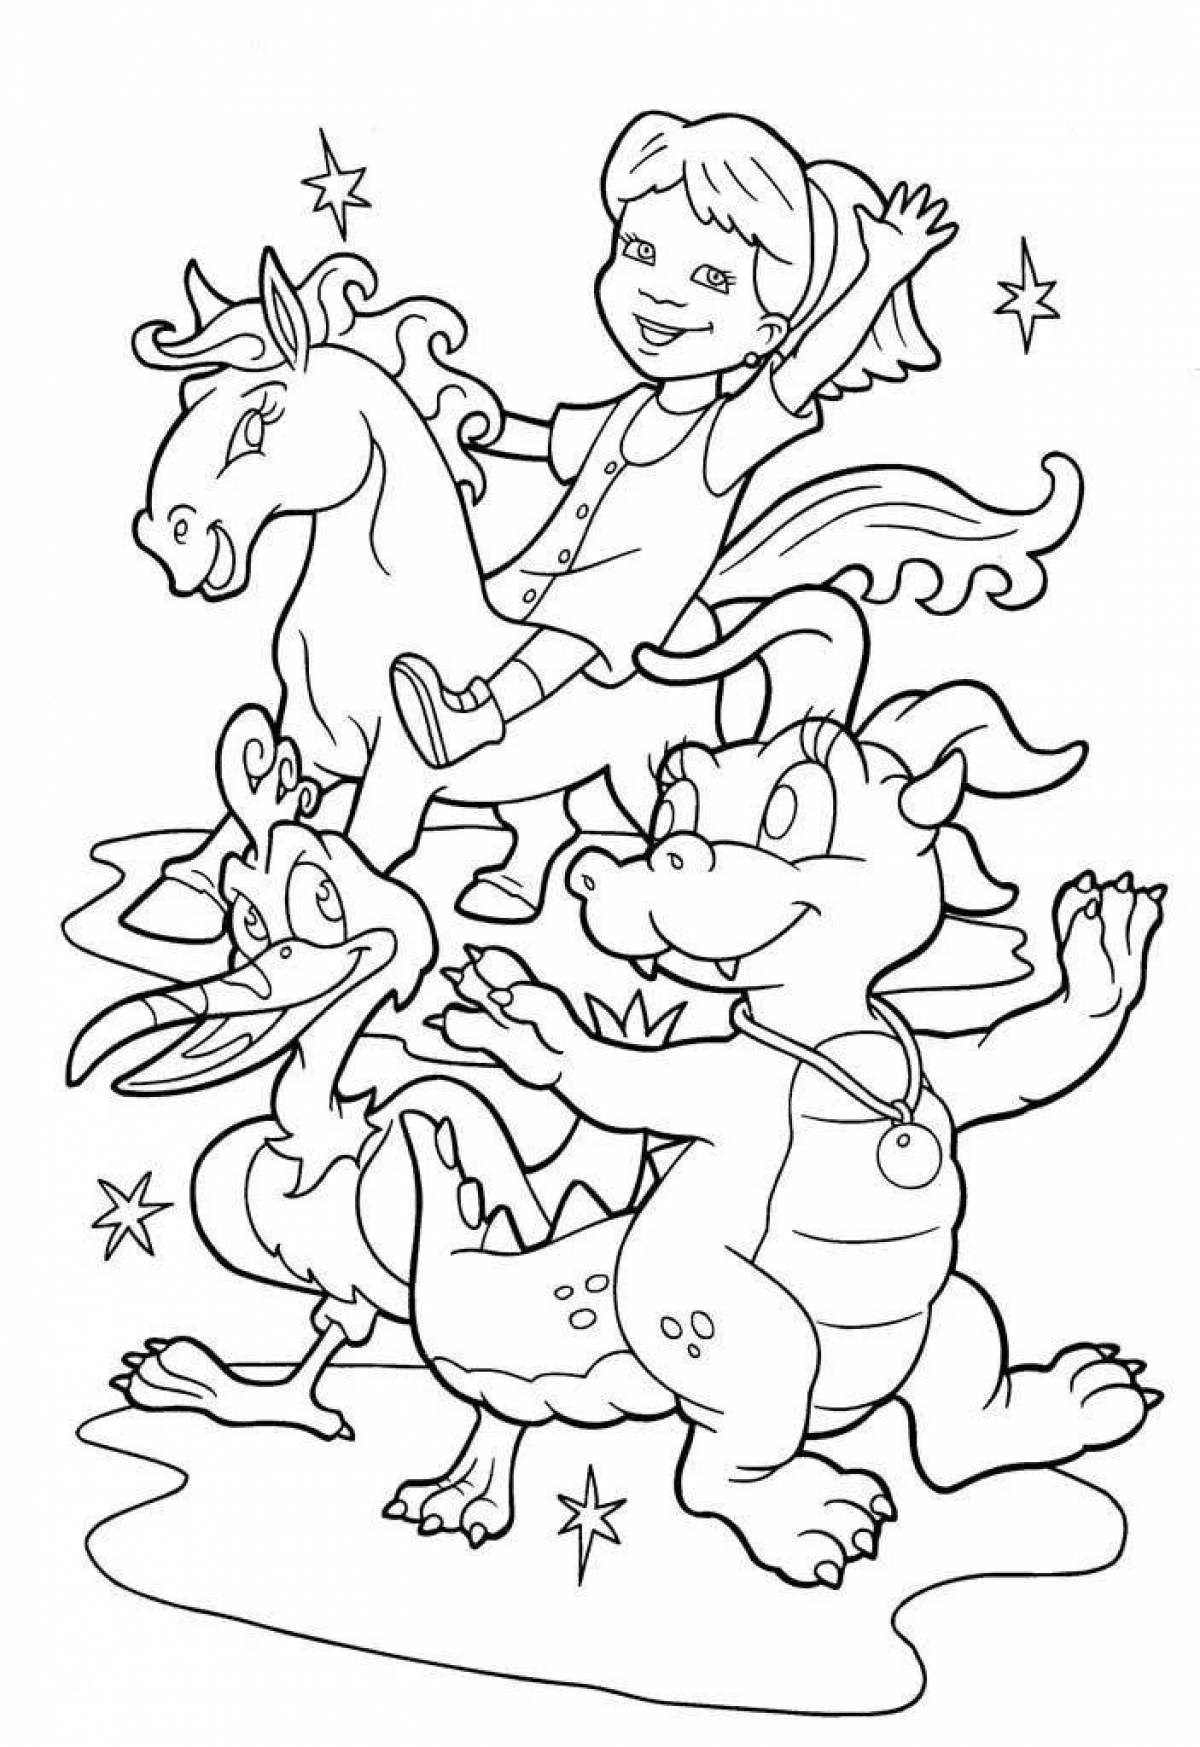 Great coloring princess and dragon